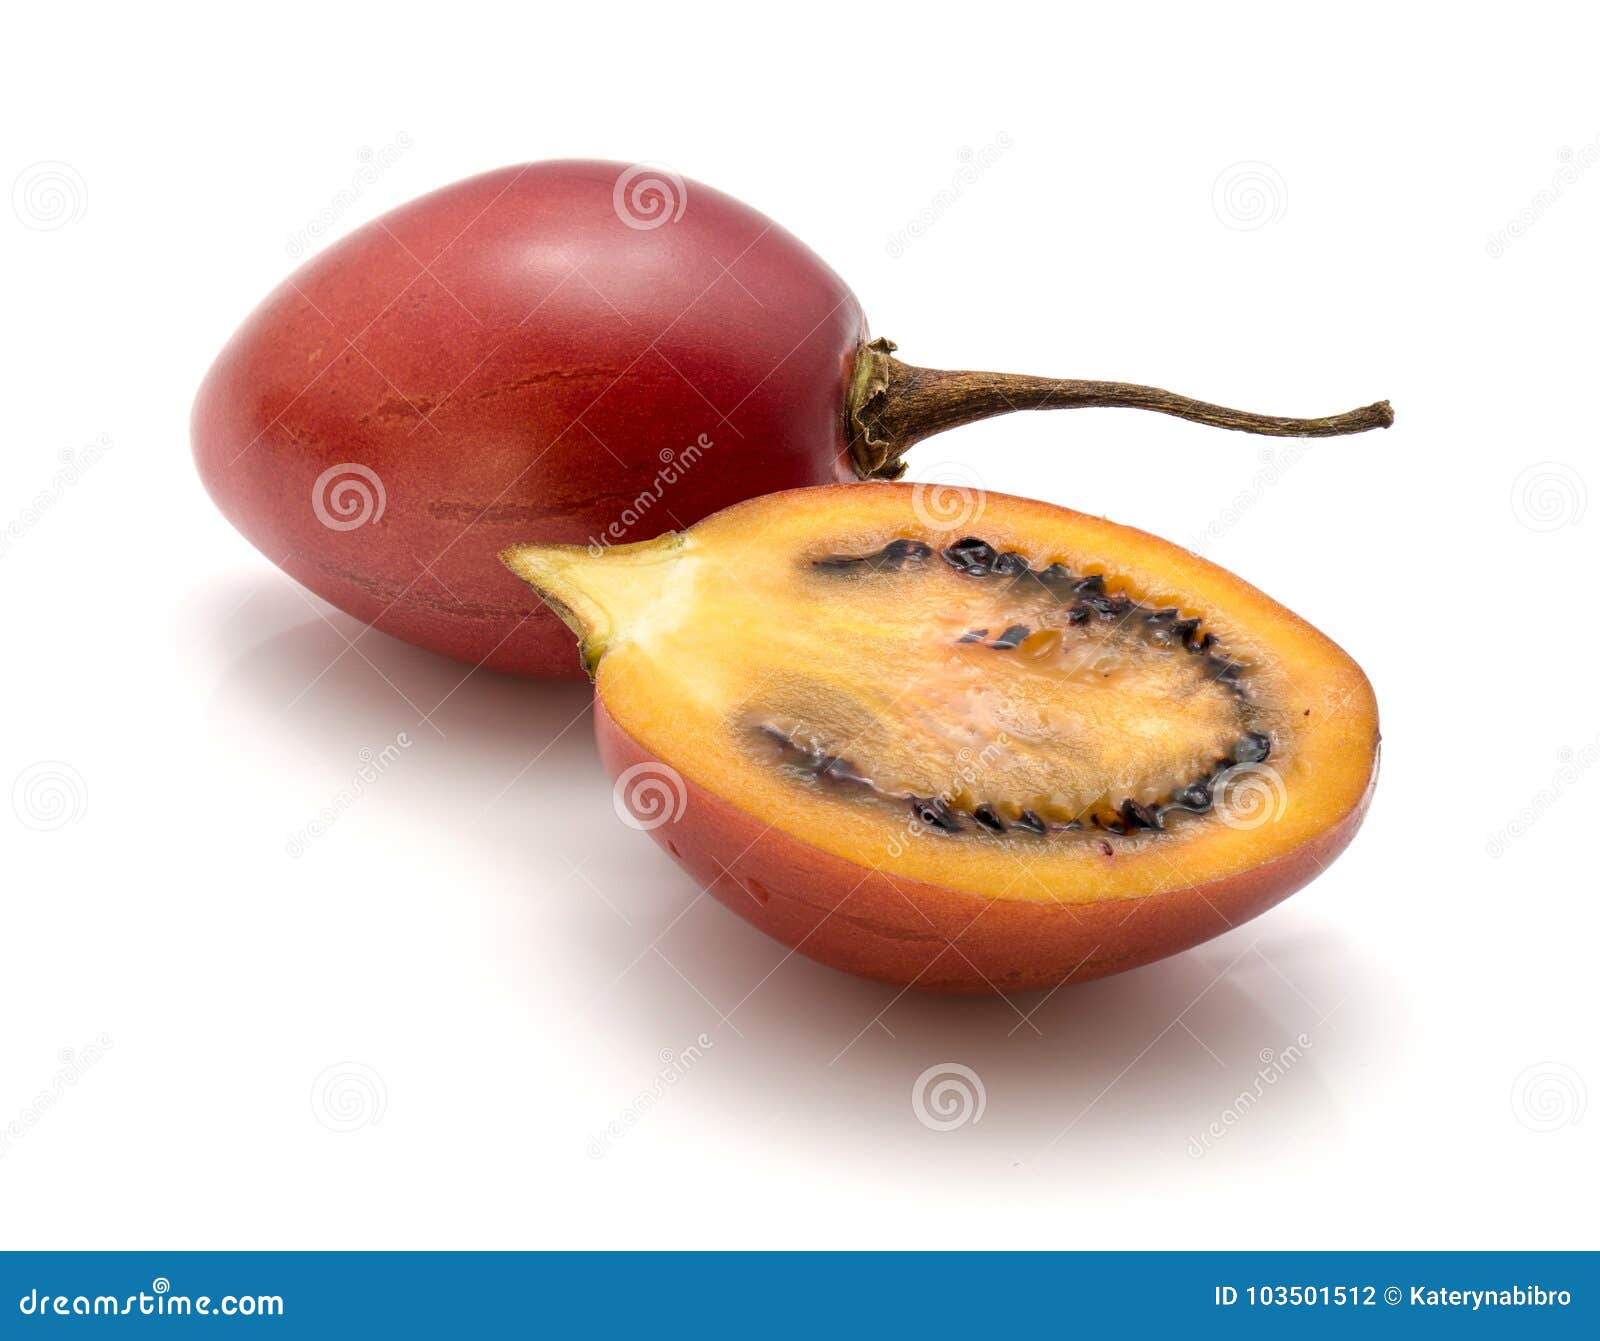 tamarillo fruit 